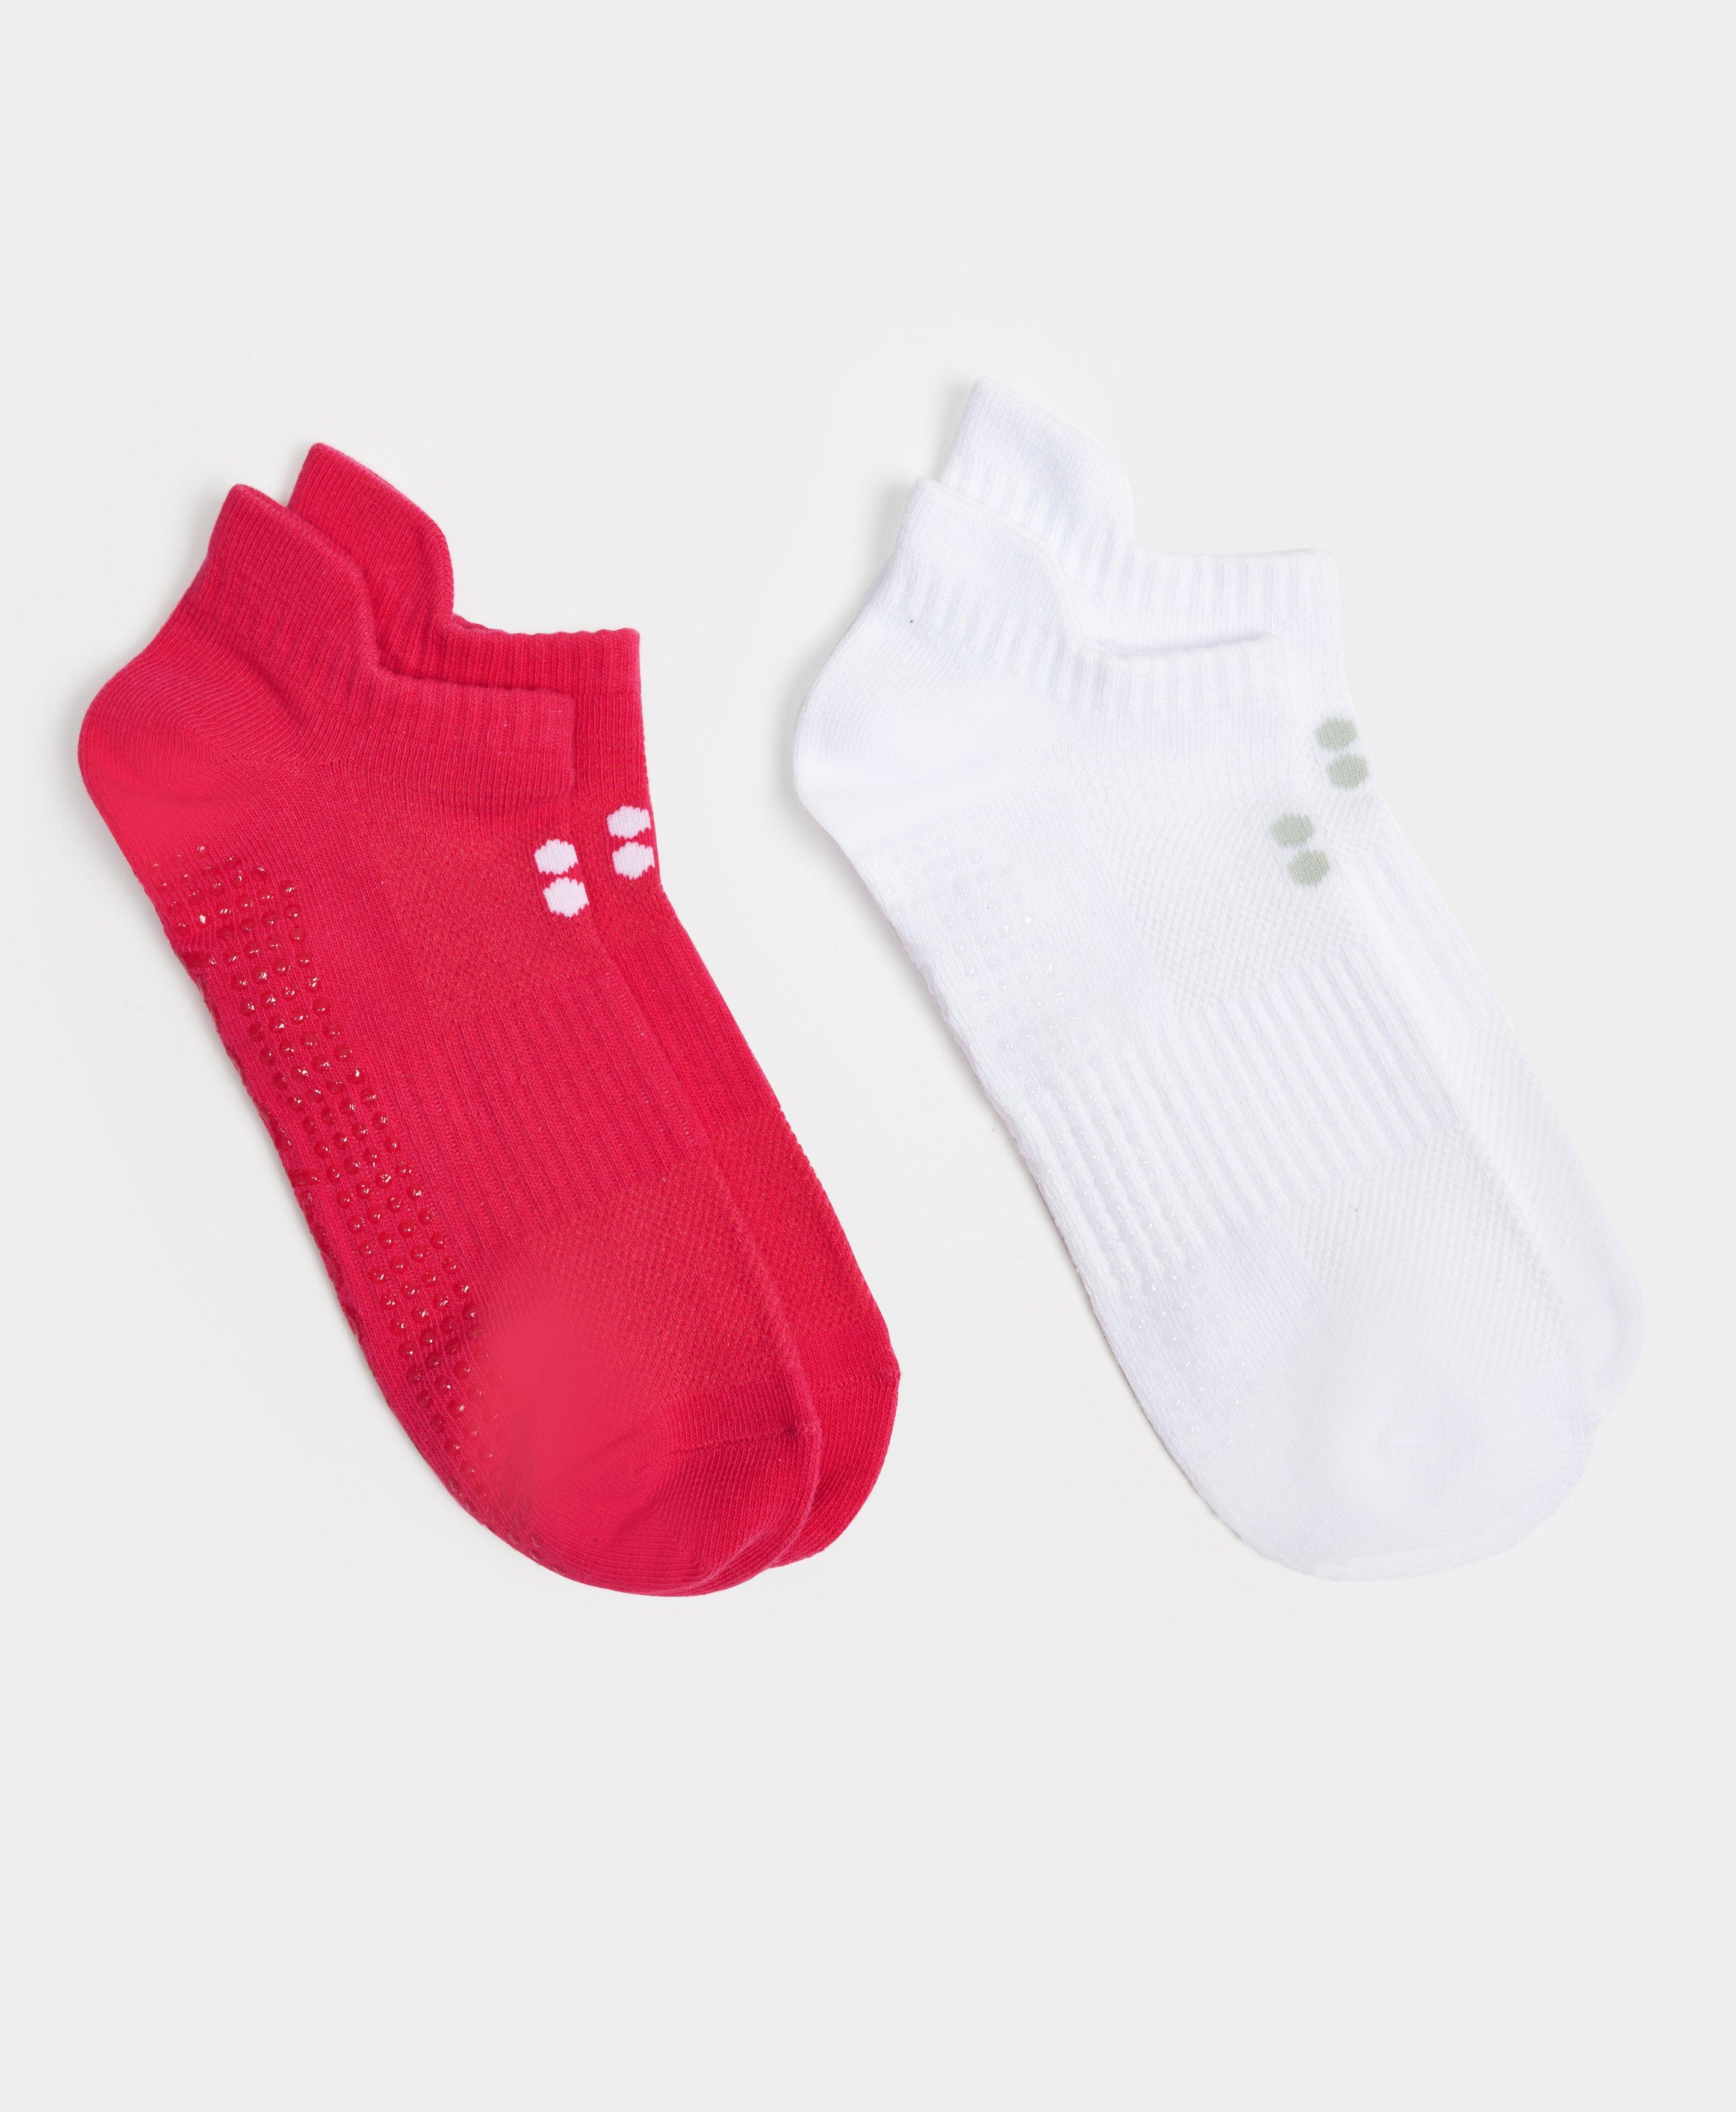 Gripper Socks for Women 